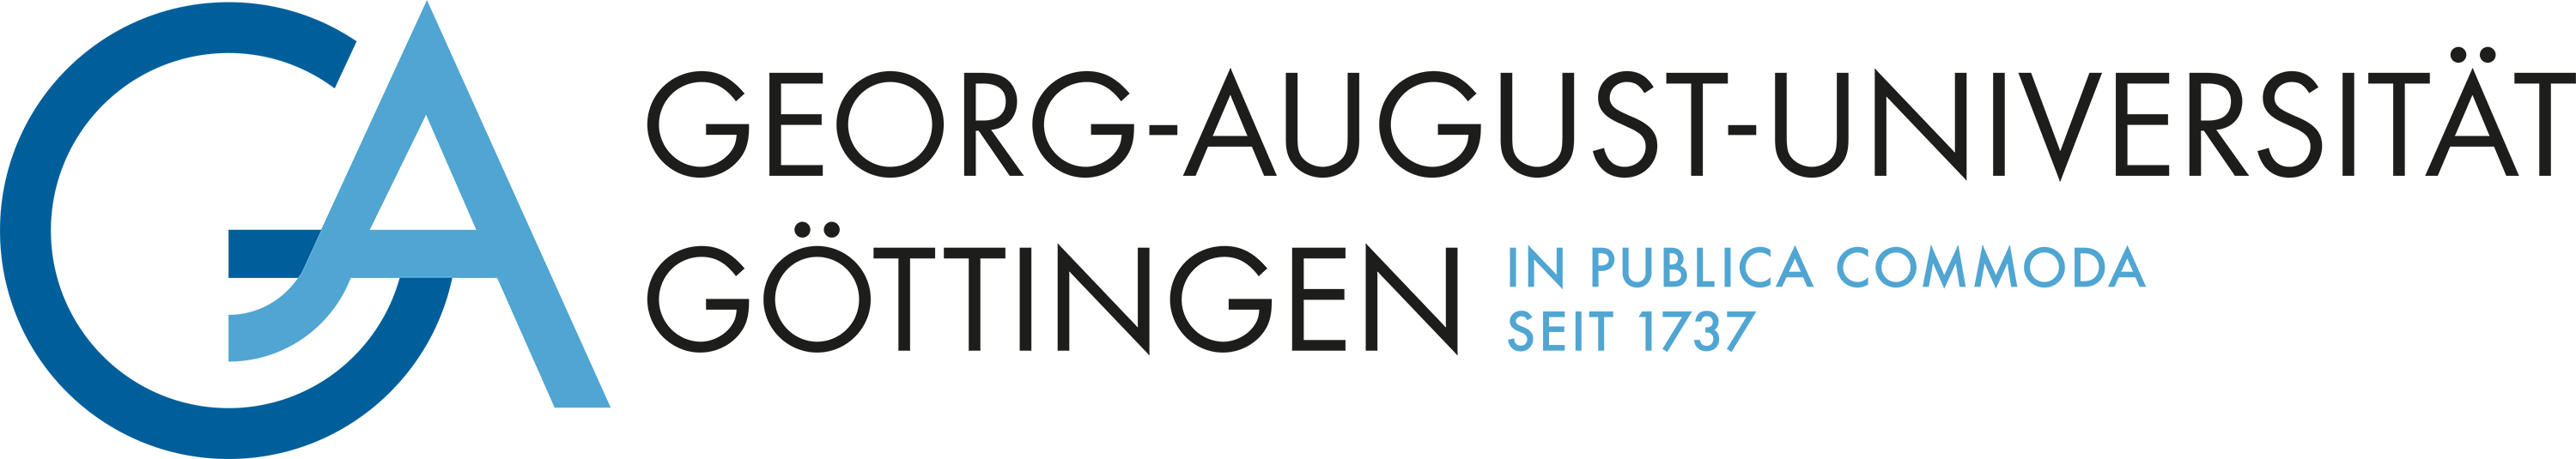 UGOE logo